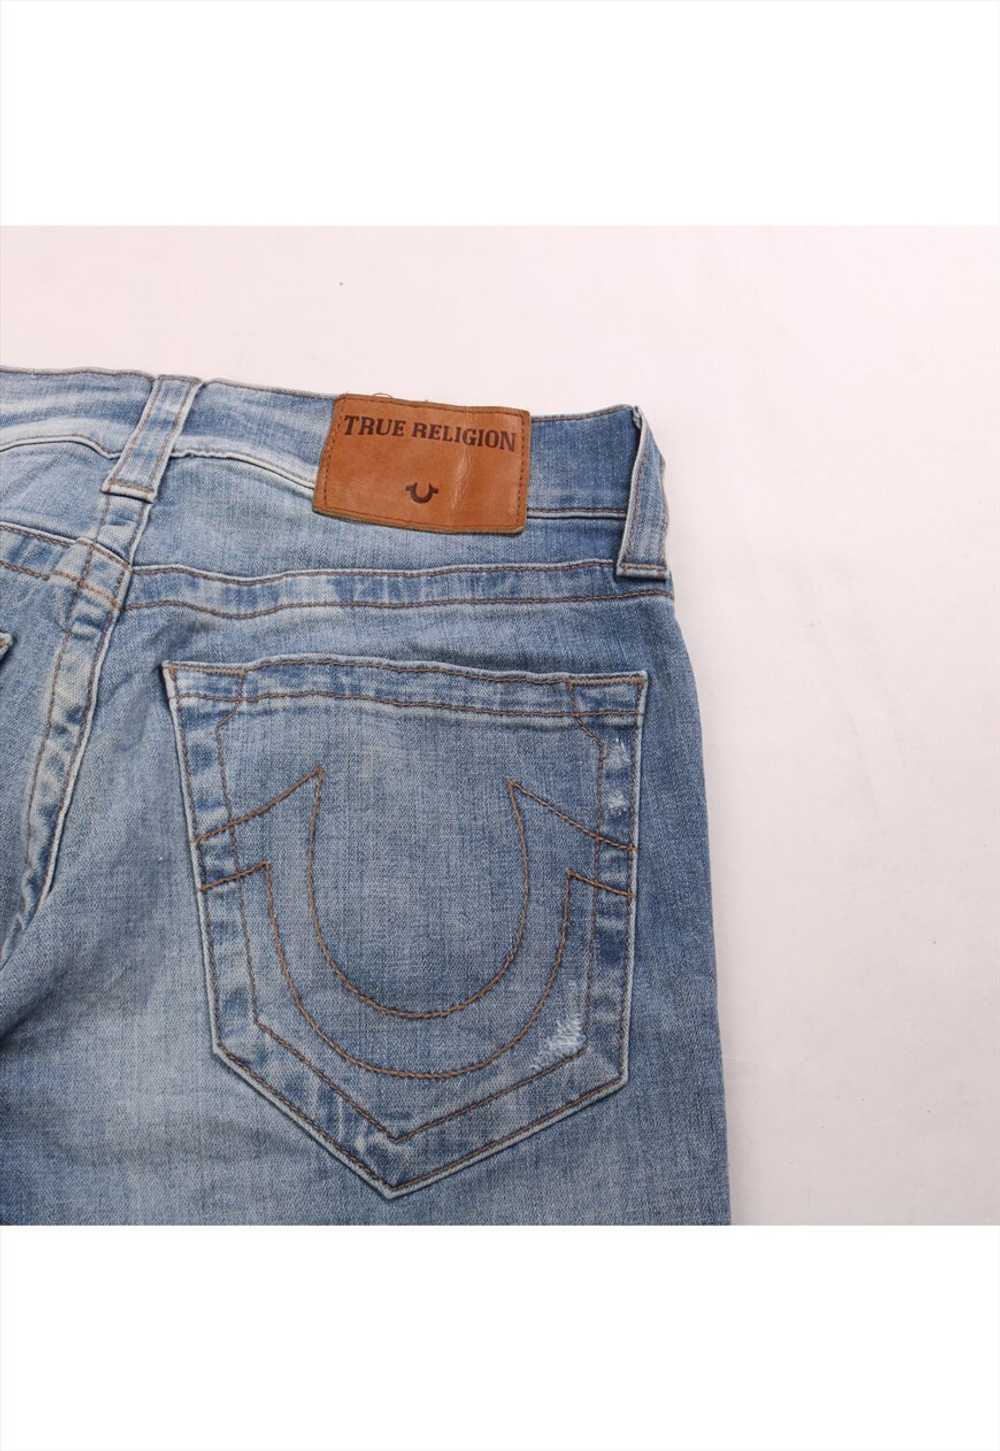 Vintage 90's True Religion Jeans / Pants Super Bi… - image 4